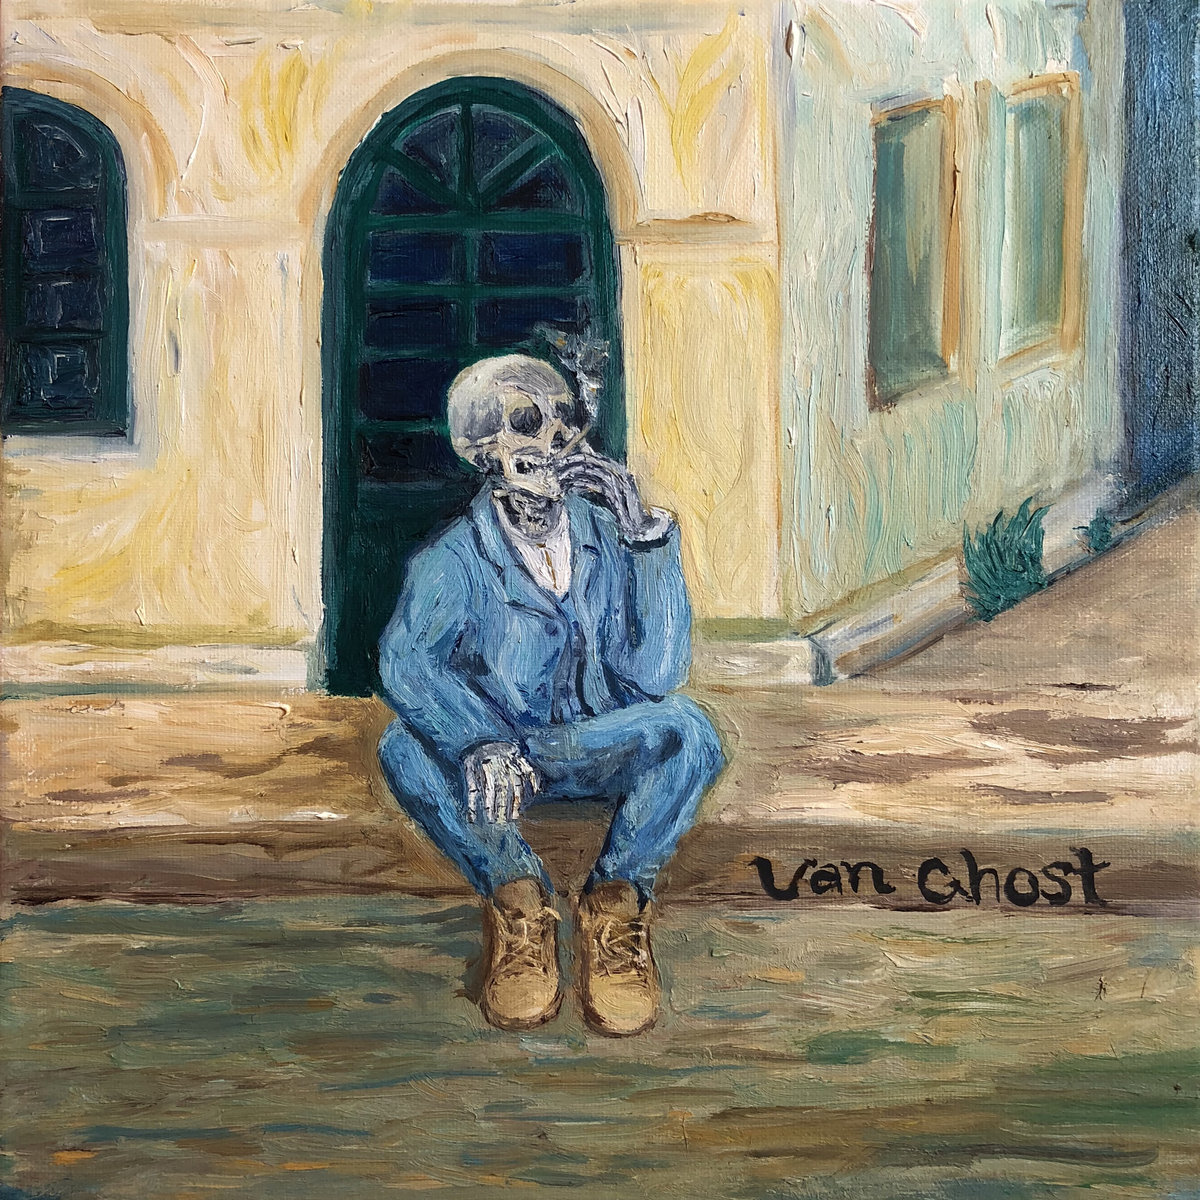 Van_ghost